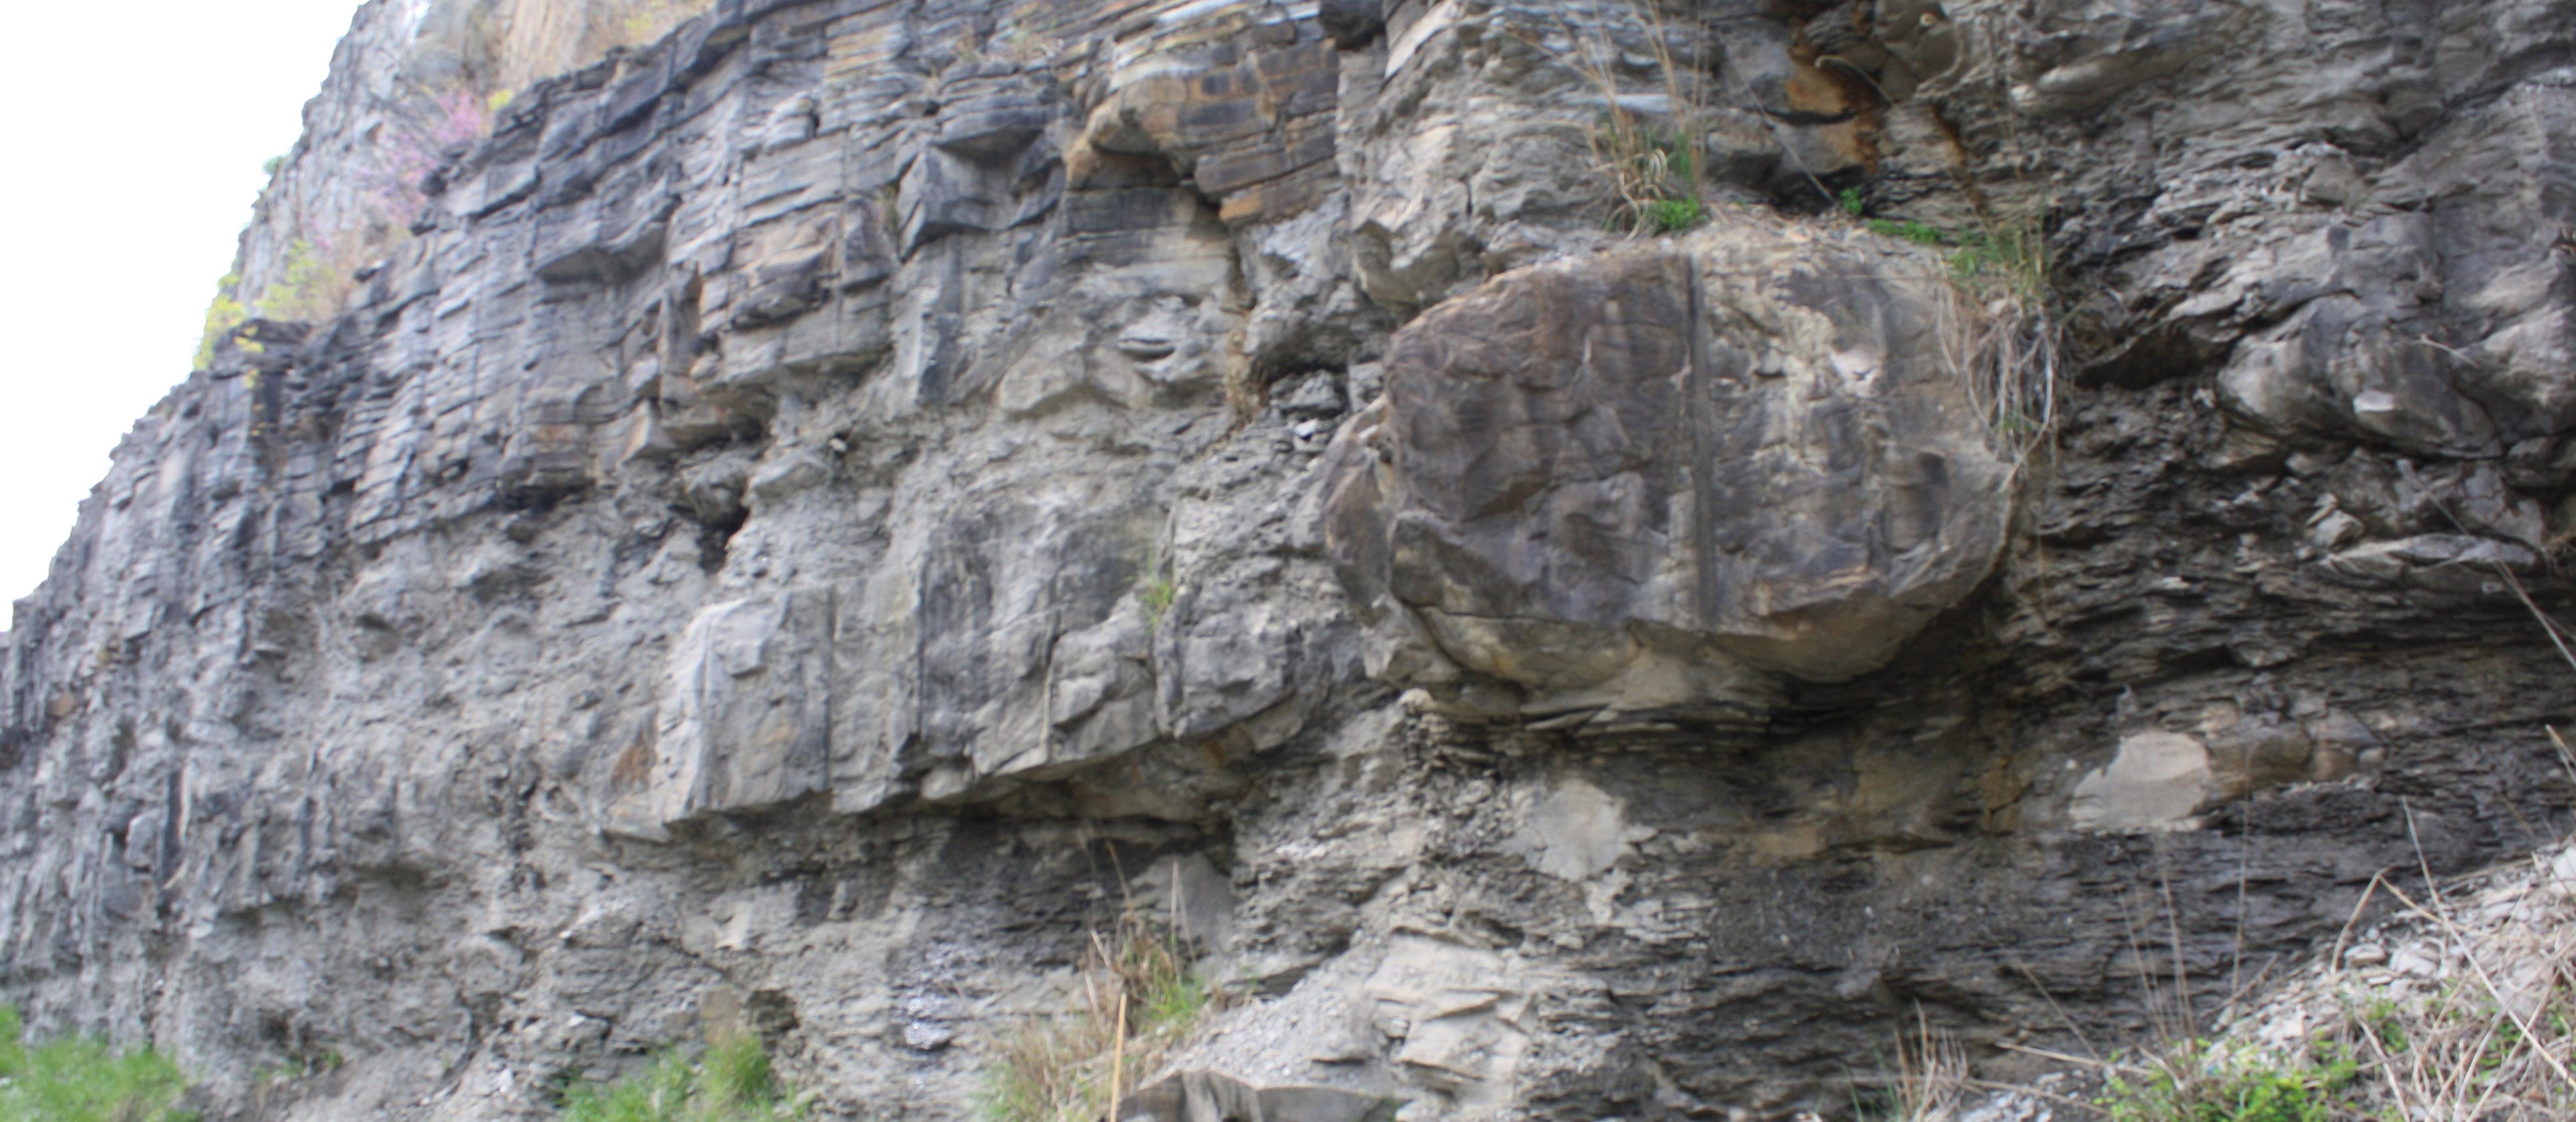 بتن ریزی های سنگ آهک بزرگ در شیل های تیره رایج هستند، مانند این مثال از عضو شیل ماگوفین، سازند چهار گوشه در شرق کنتاکی.